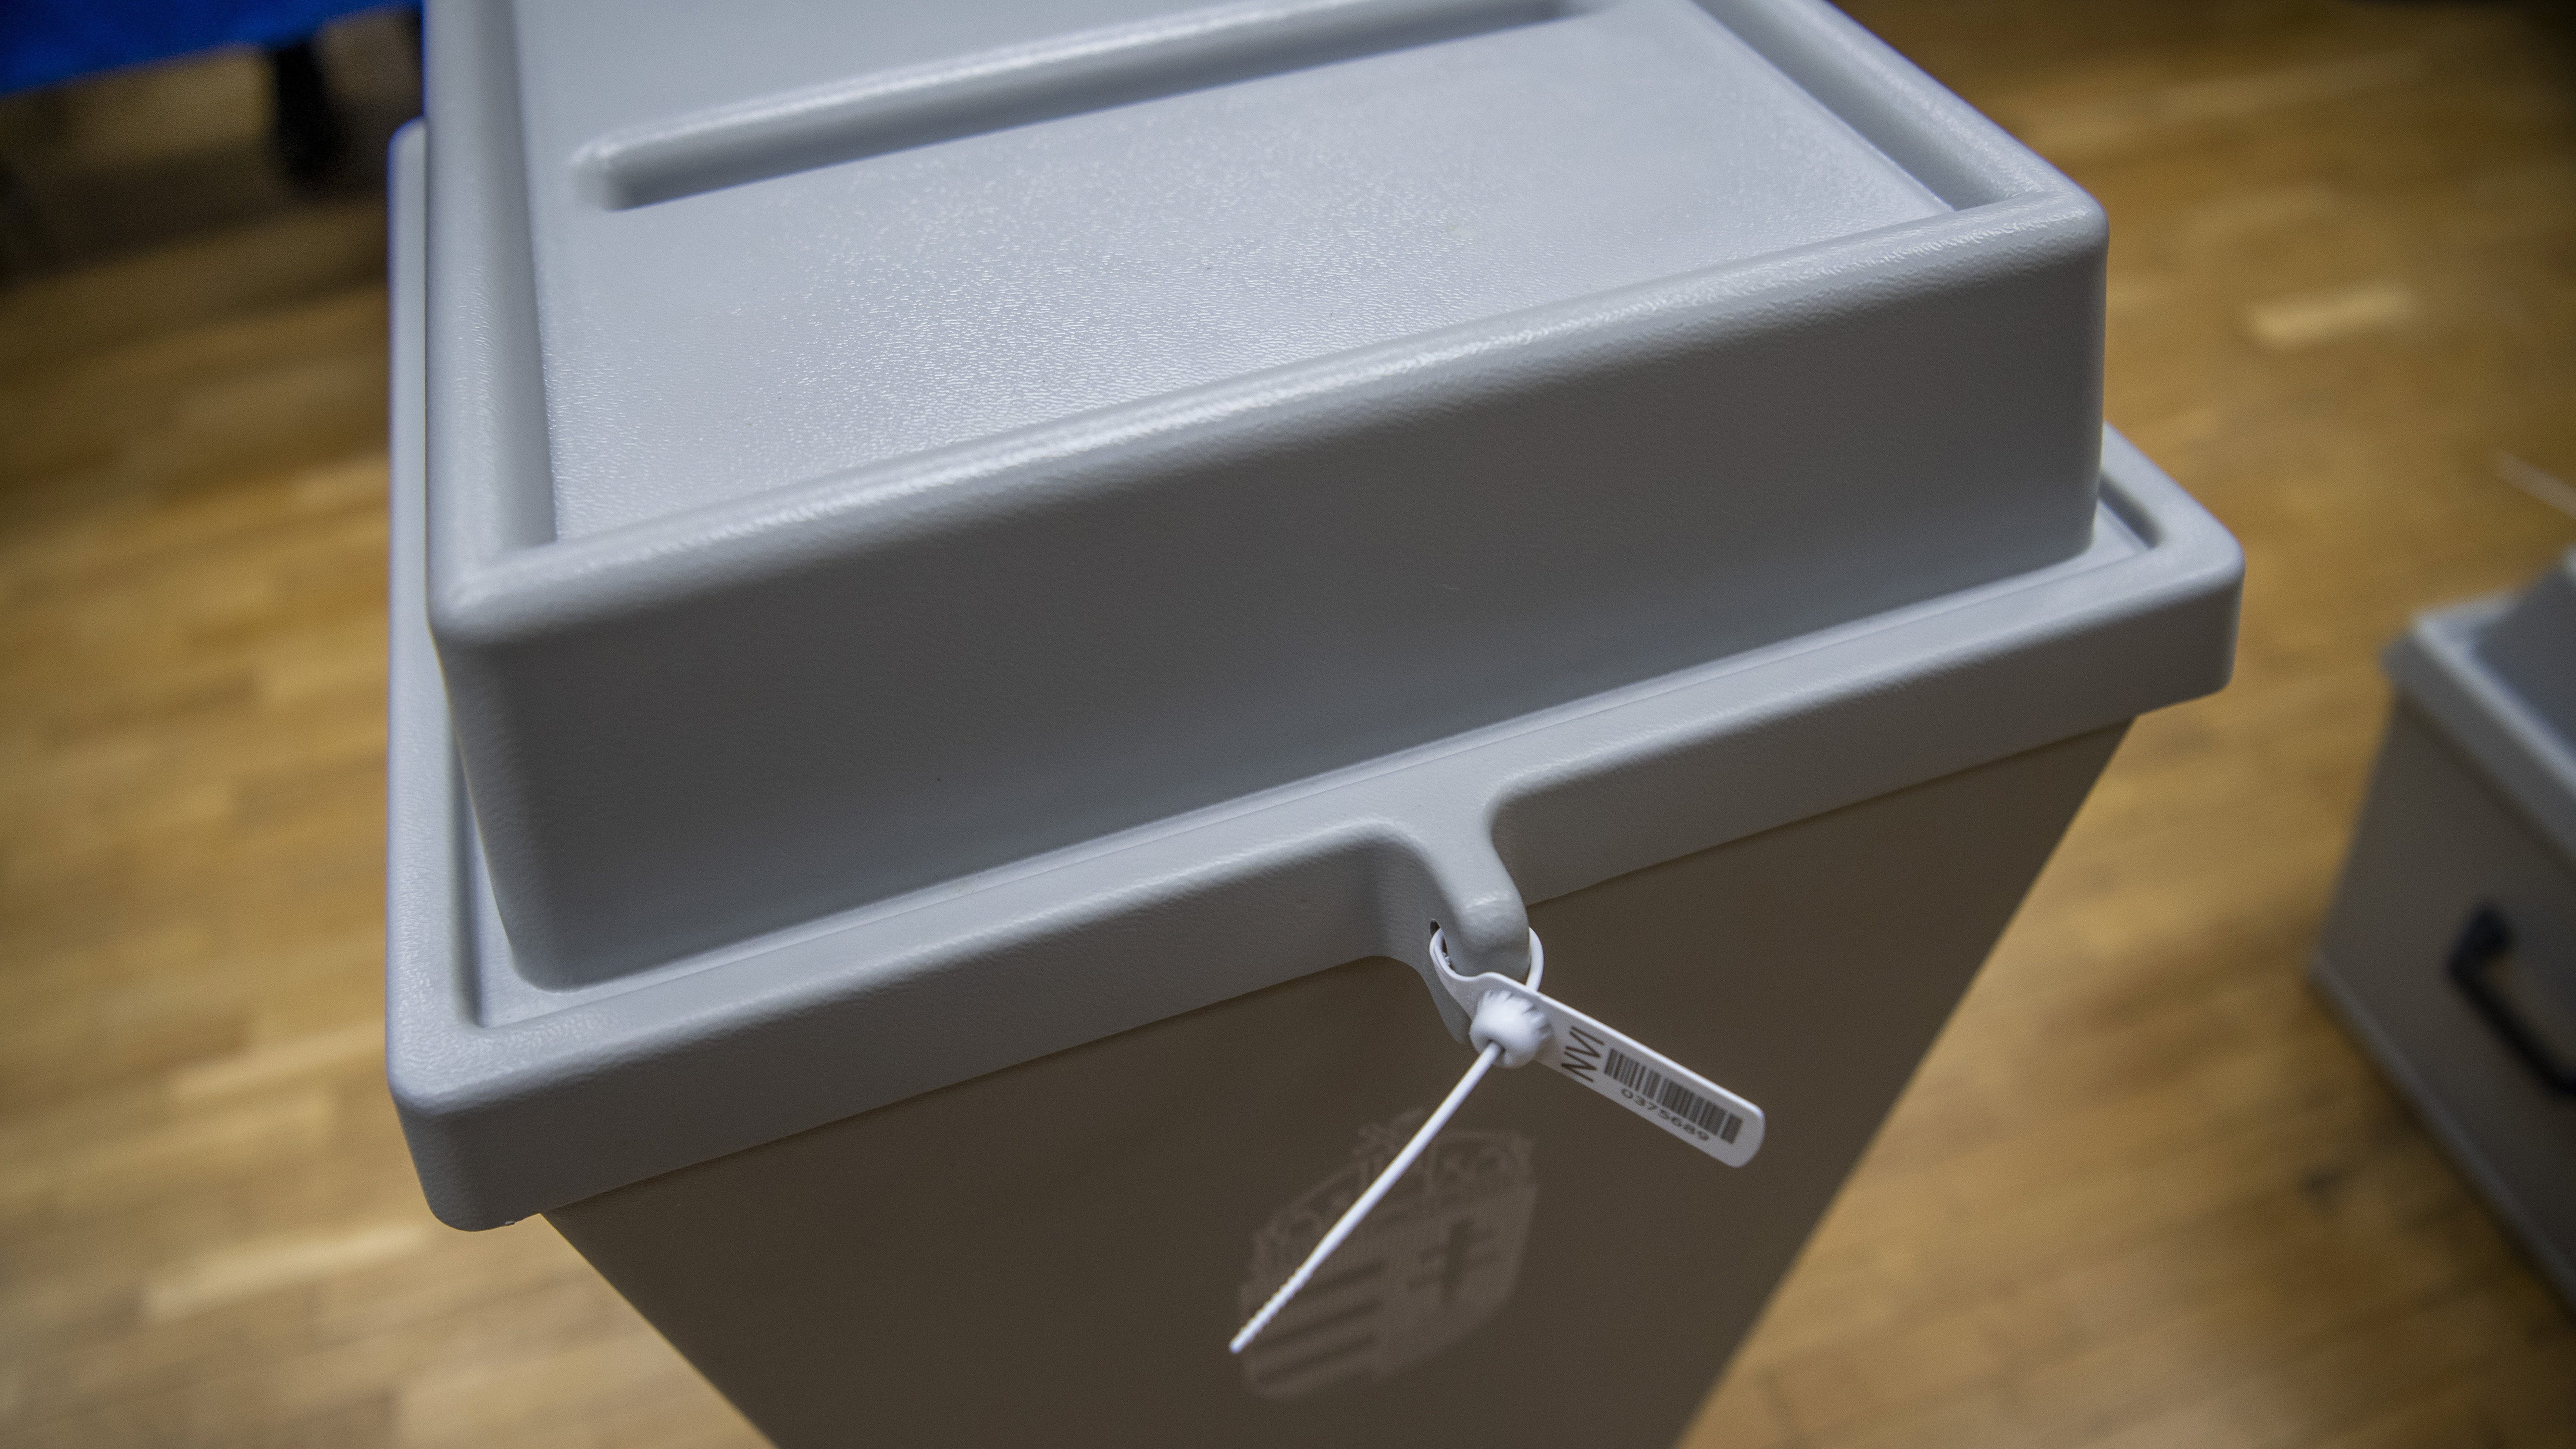 Özönlenek a levélszavazatok, külképviseleti urnák az NVI-be